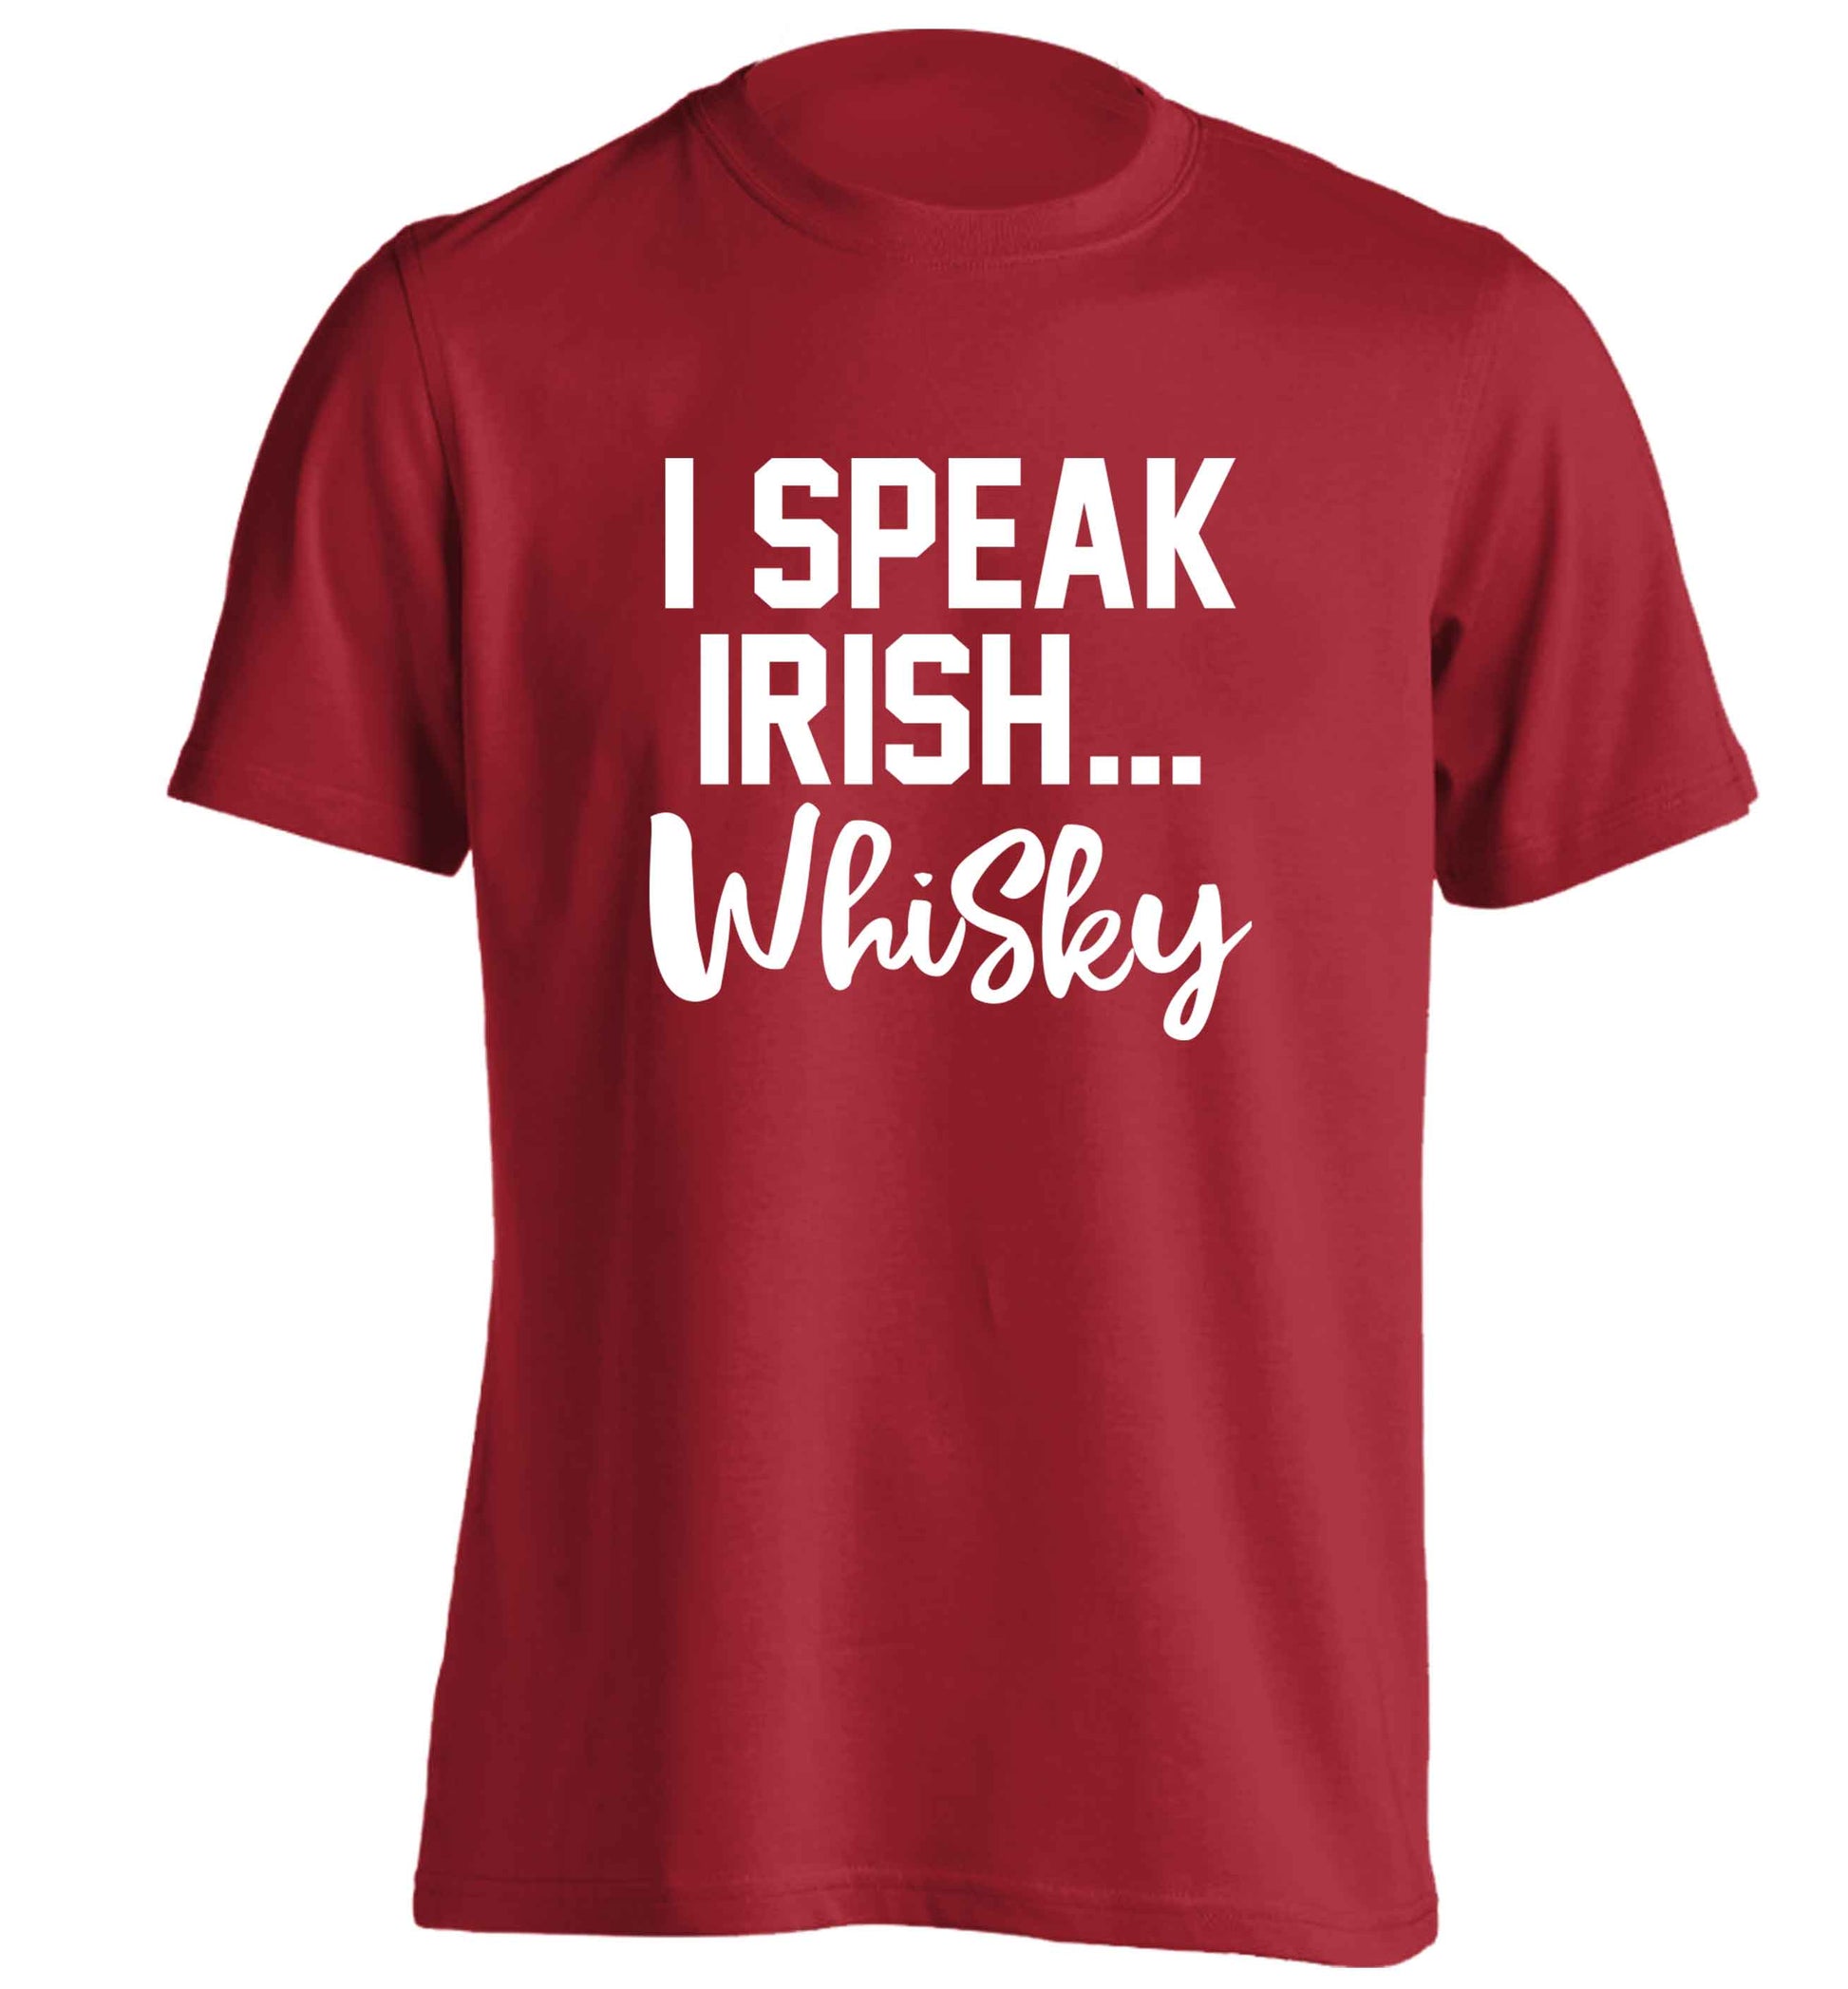 I speak Irish whisky adults unisex red Tshirt 2XL